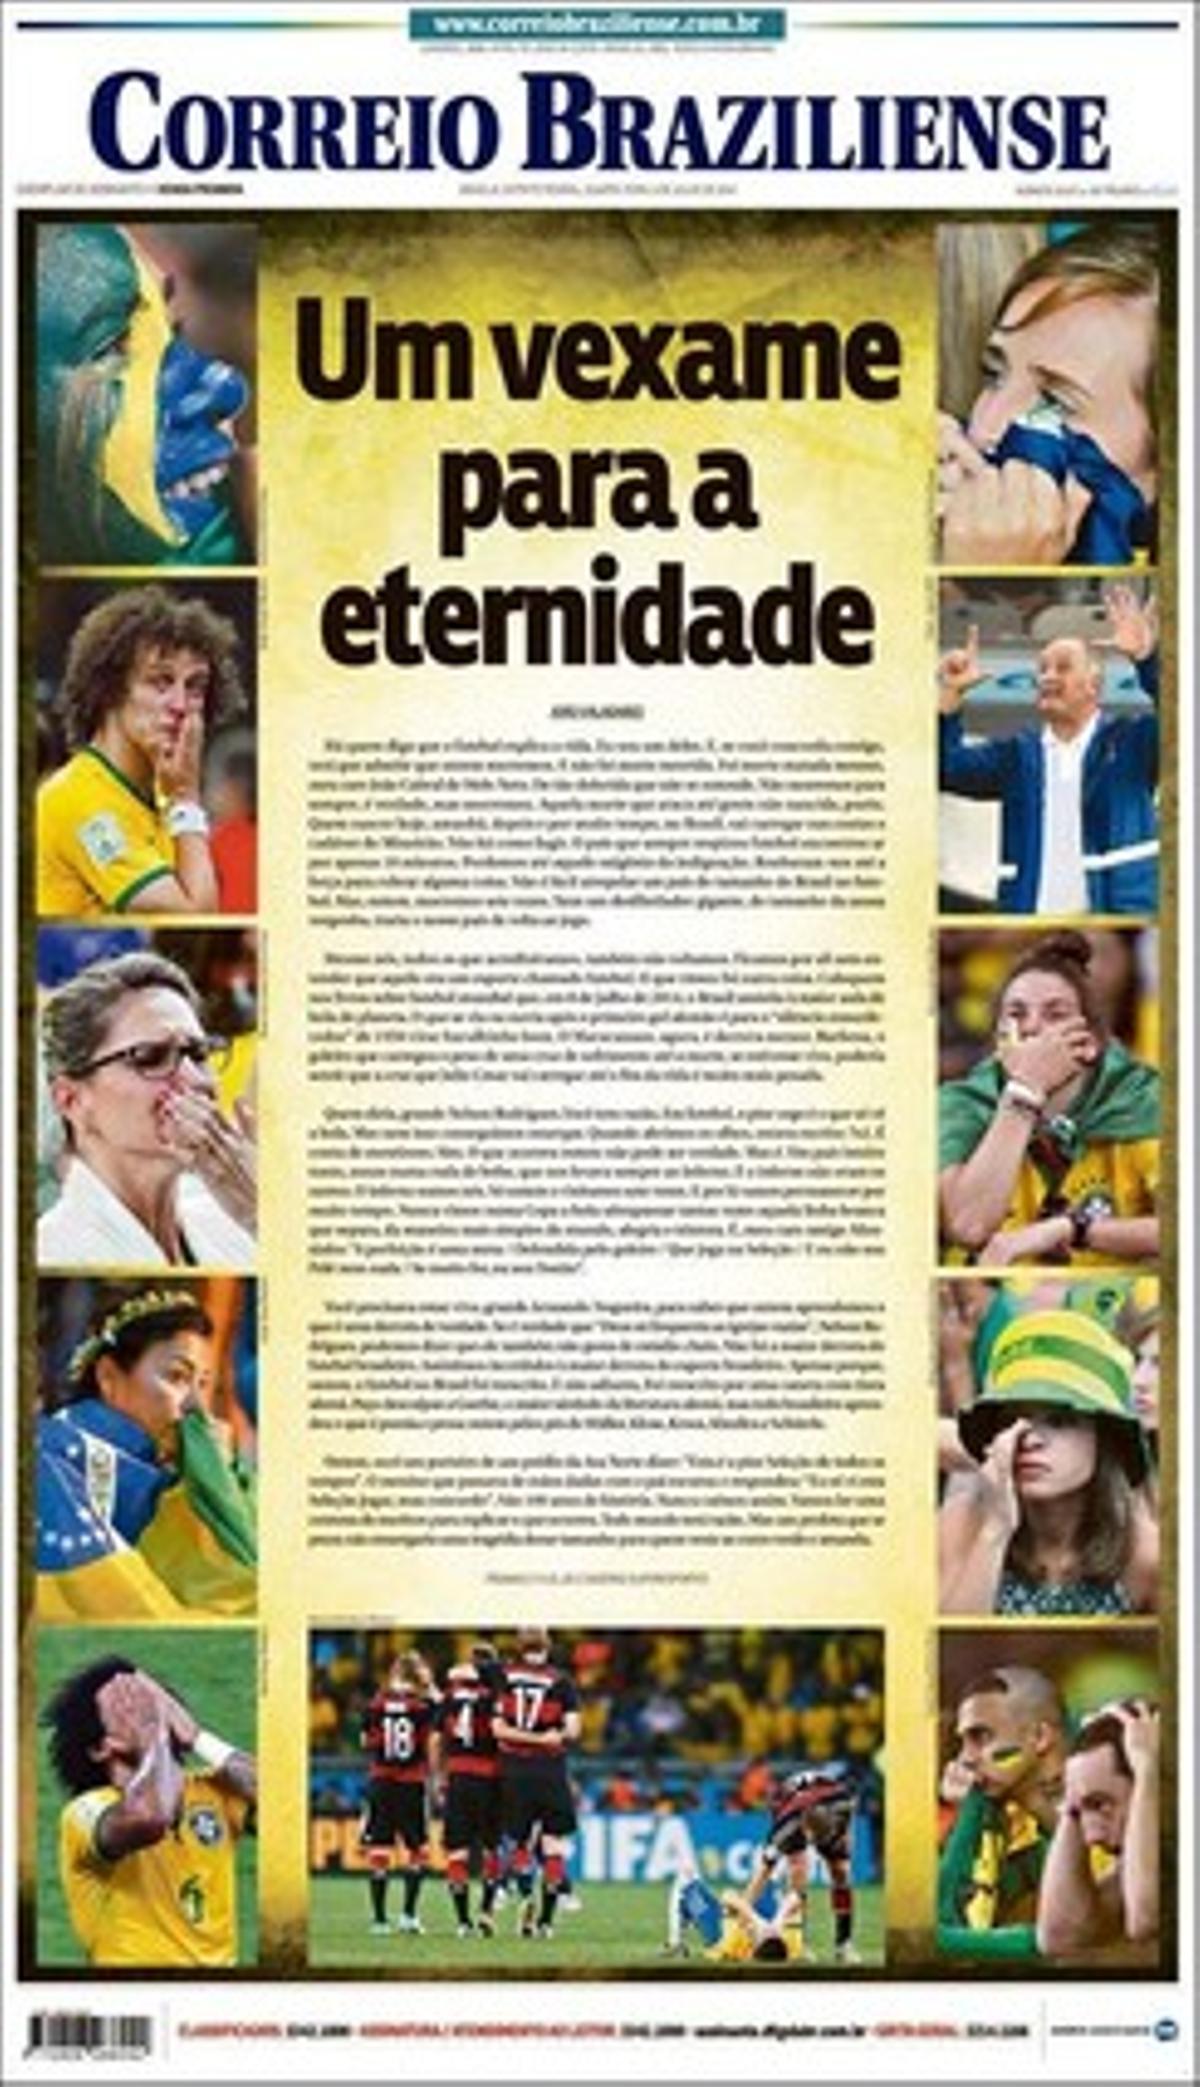 L’enfonsament de tota una afició i un país, a ’Correiro Braziliense’.